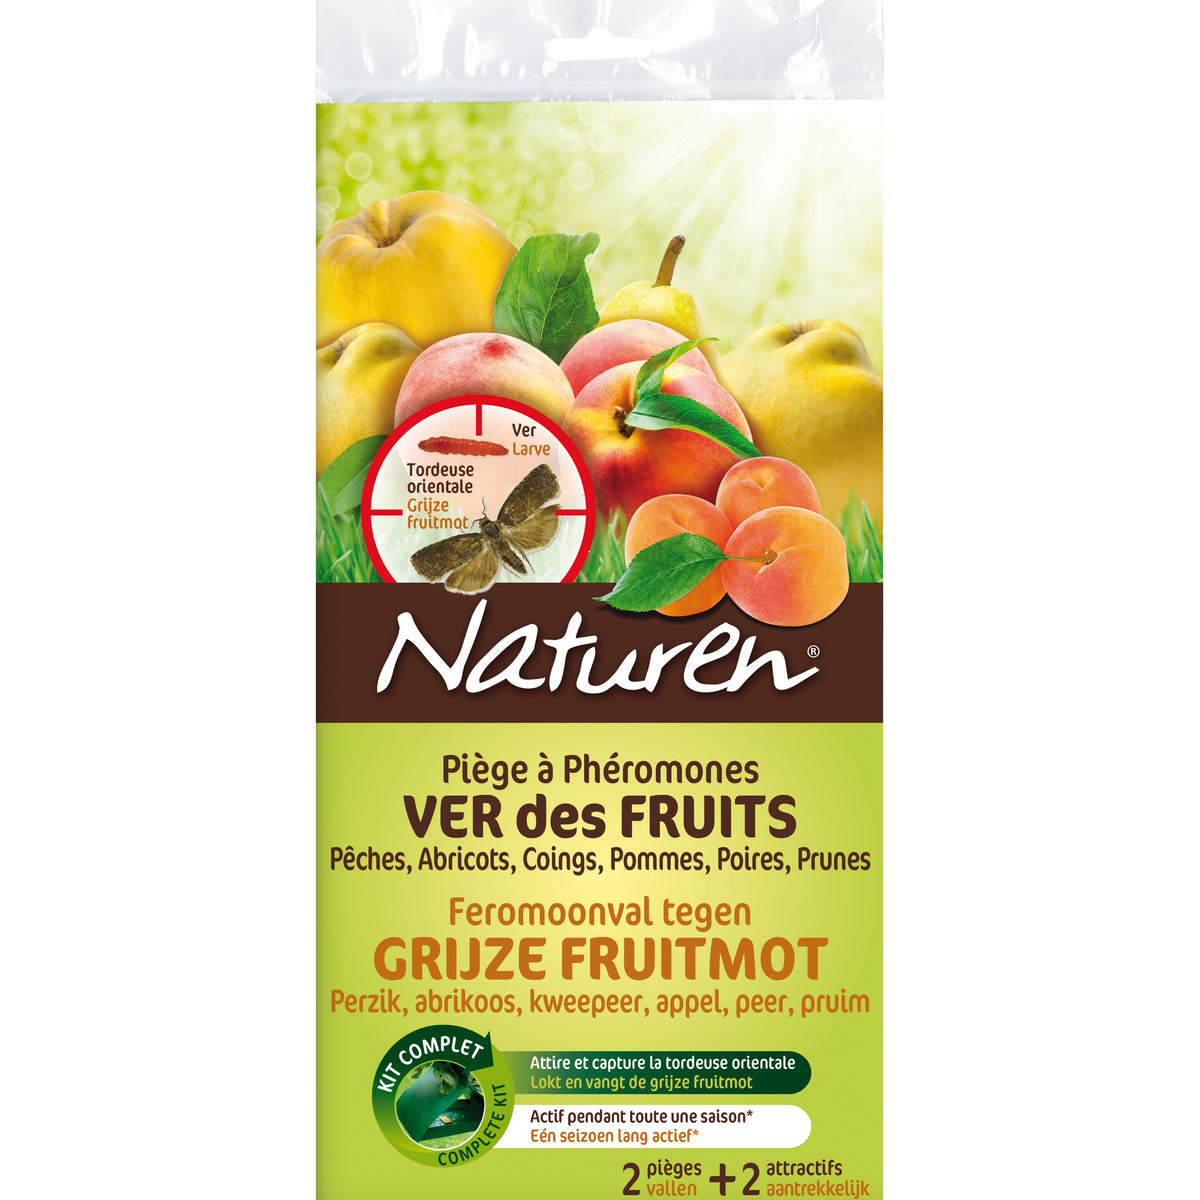 2 Pièges à phéromones - Ver des fruits NATUREN - Plantes